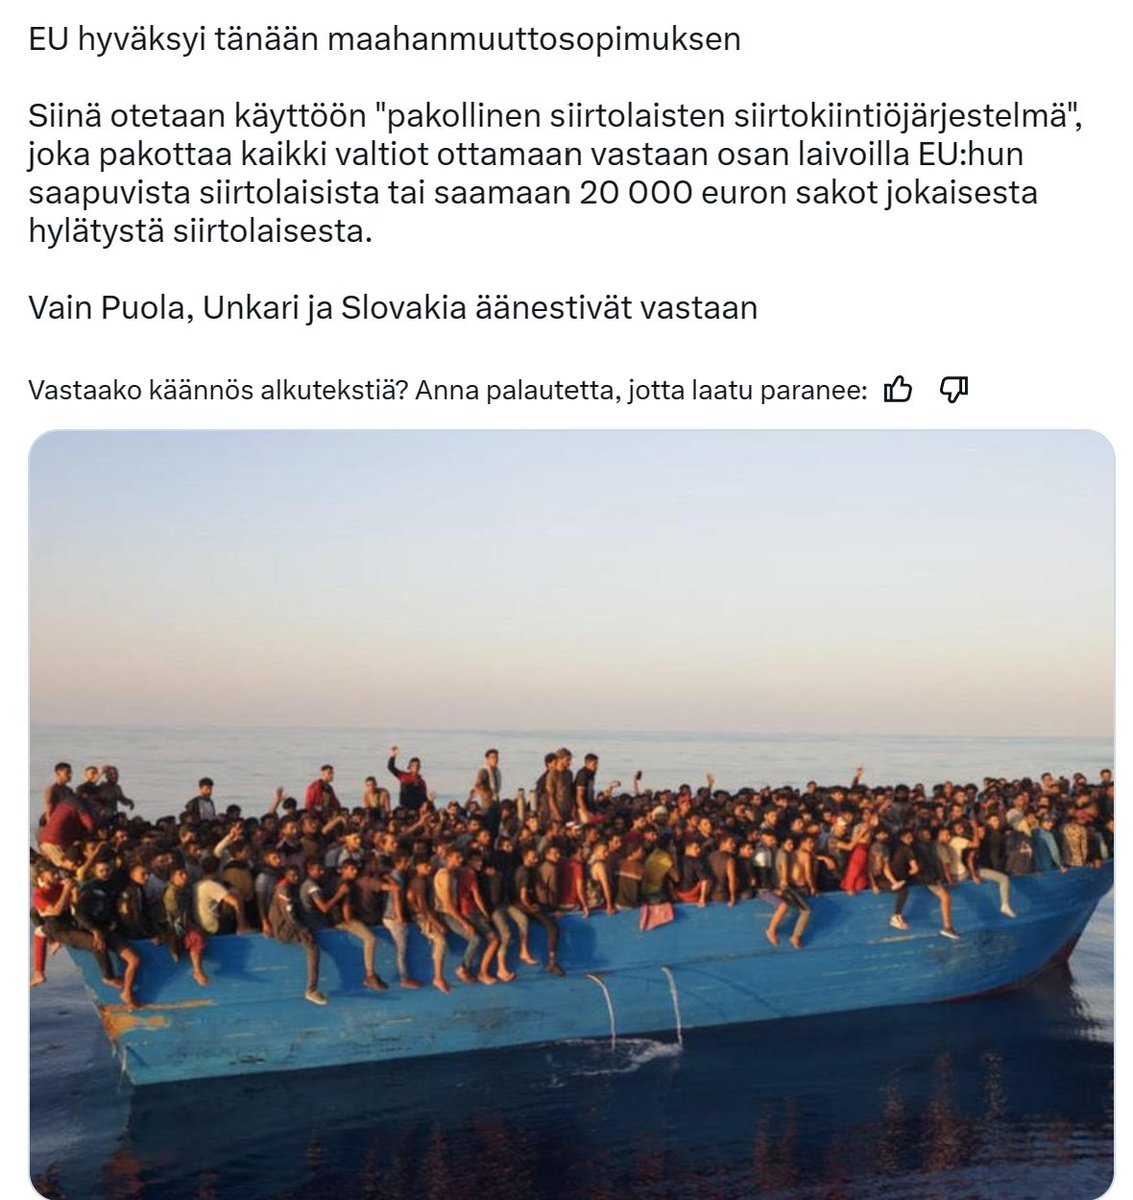 Onko tosiaan näin. Onko Suomi hyväksynyttämän järjestelyn missä 'hyväntekeväisyys järjestöt' rahtaavat laittomia siirtolaisia, meidän rahoilla, Välimeren yli ja tulijat on vaan jaettava eri maihin.

Eikö kukaan muu maa muka vastustanut tätä järjettömyyttä, rahdata Terroristeja ..